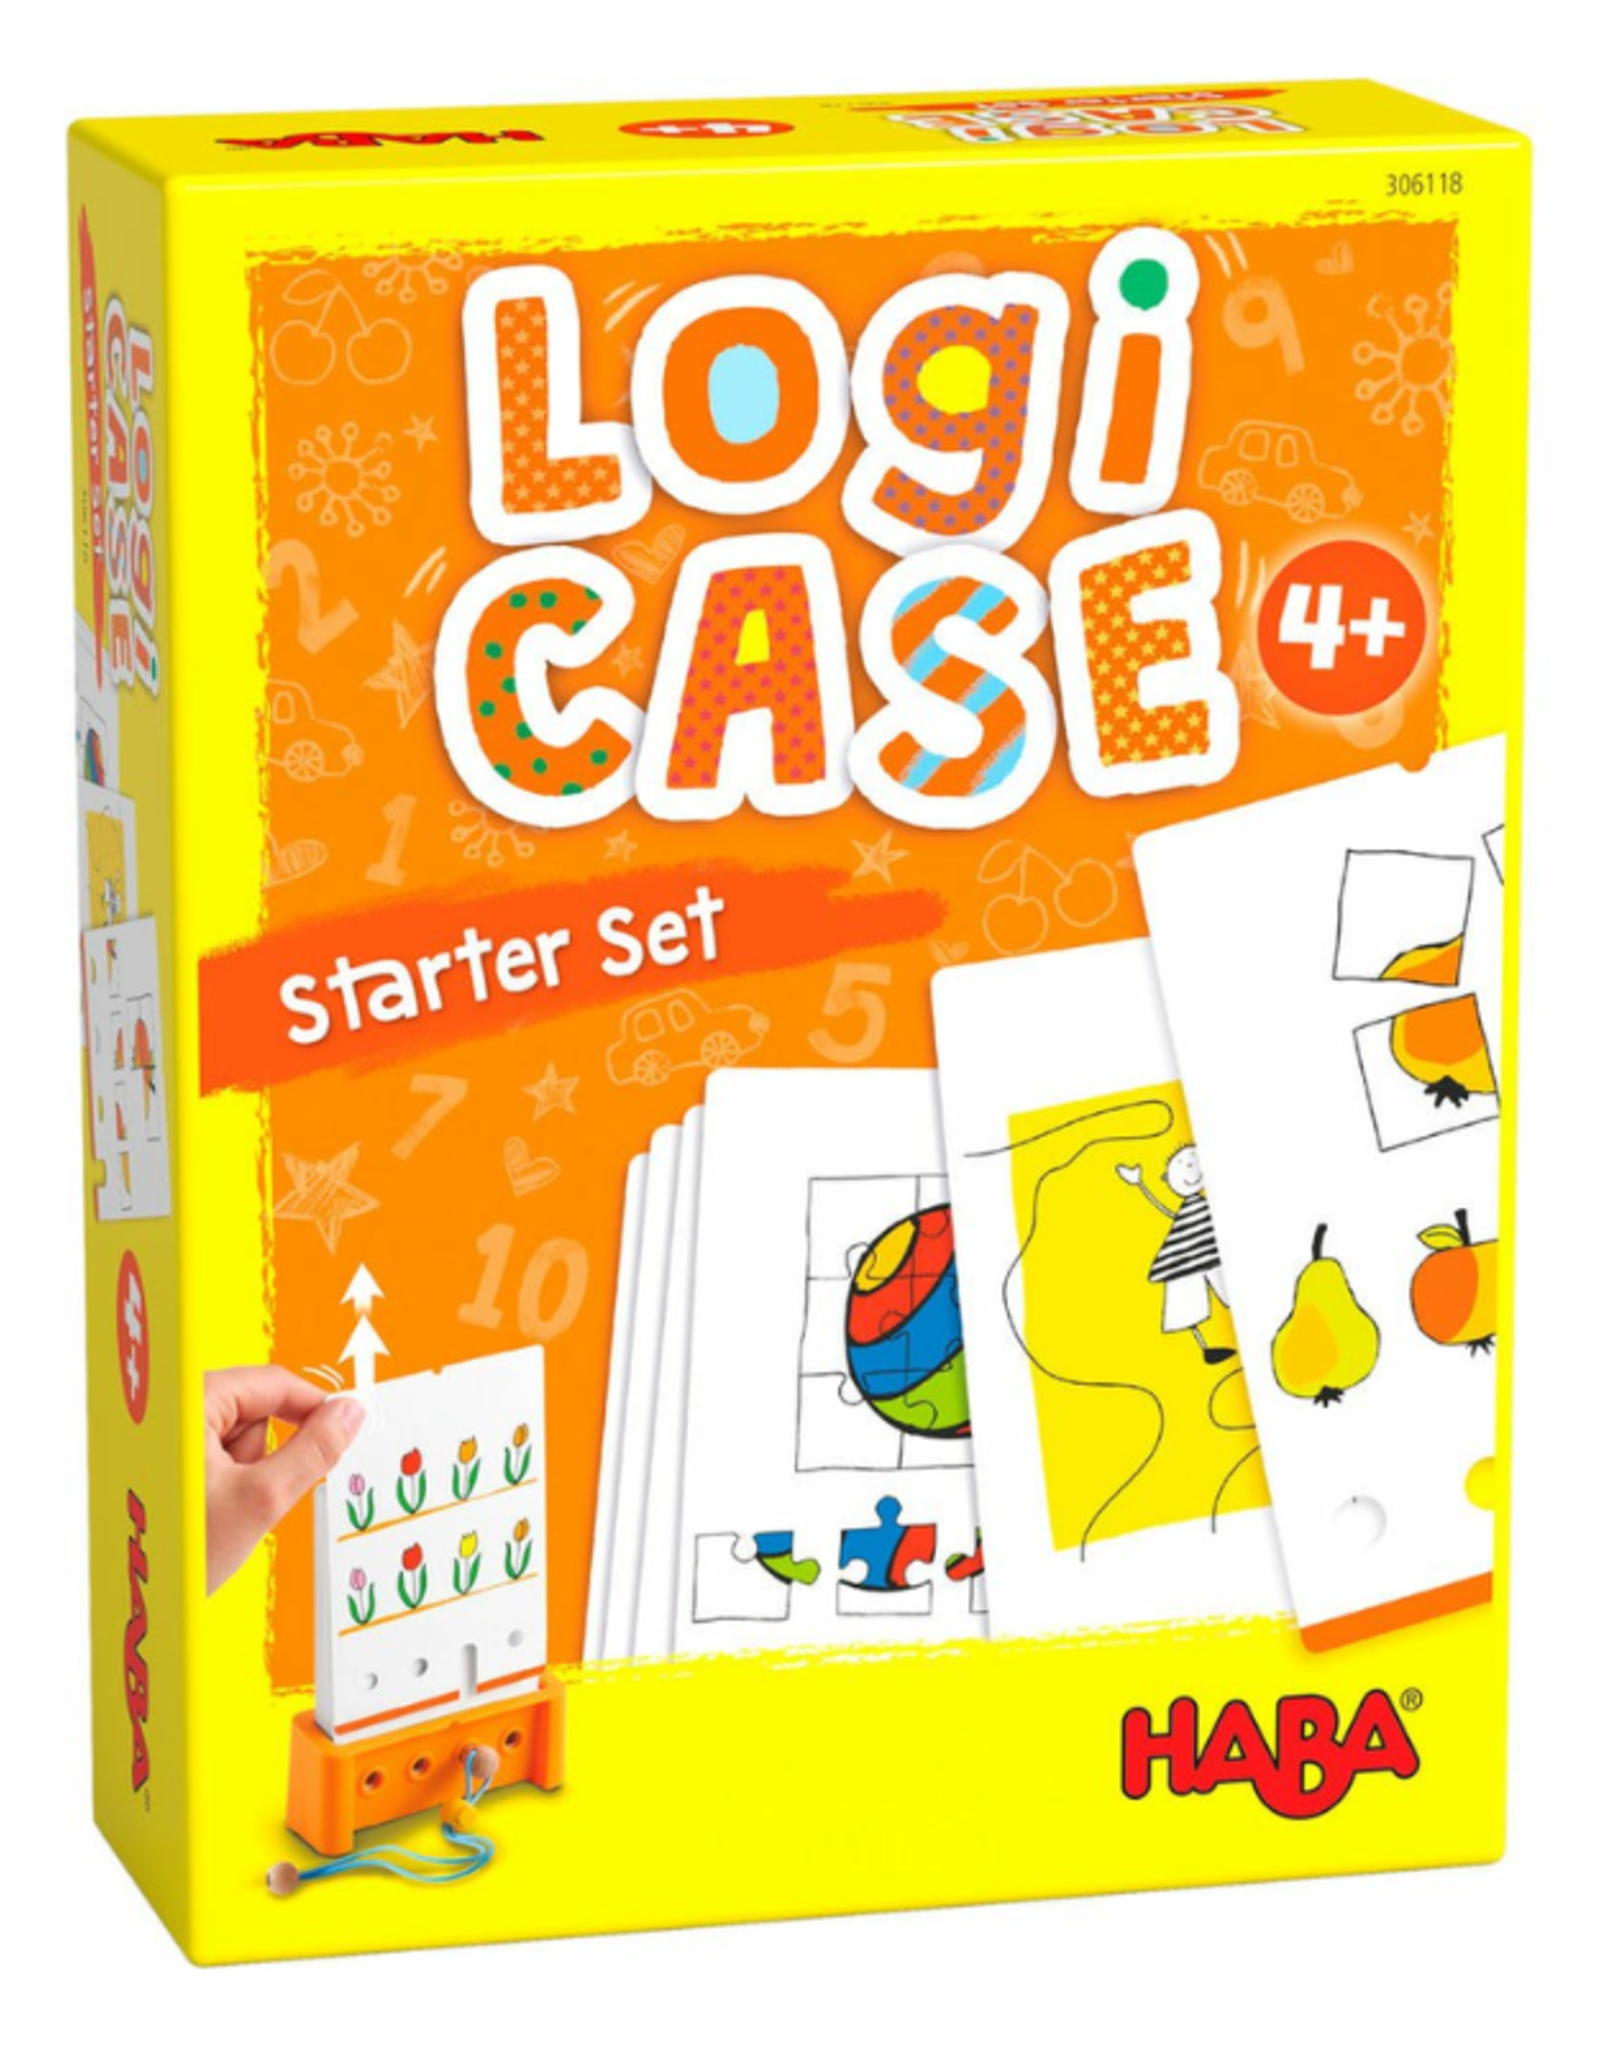 Logic! CASE: Starter Set (Ages 4+)